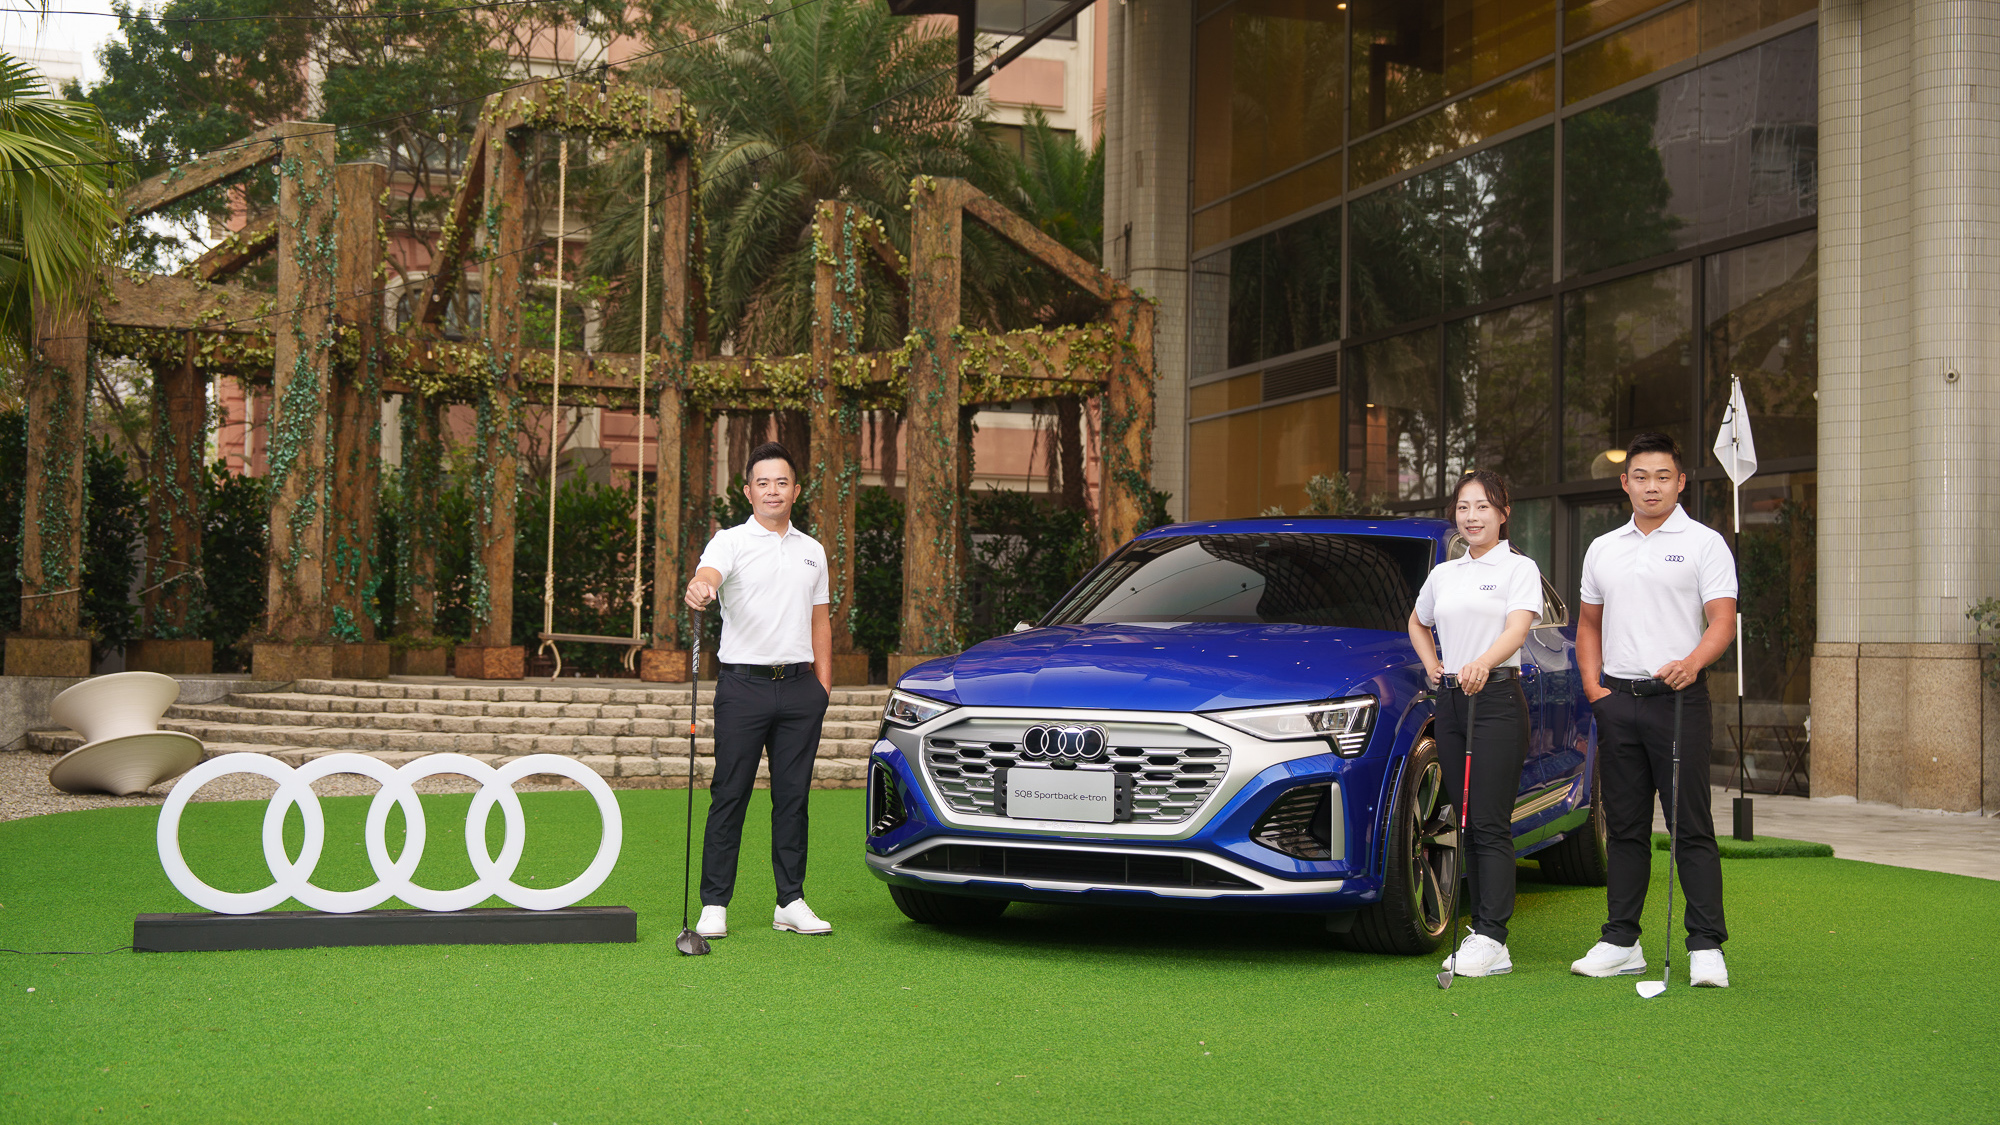 台灣奧迪啟動《Audi Golf League》年度計畫